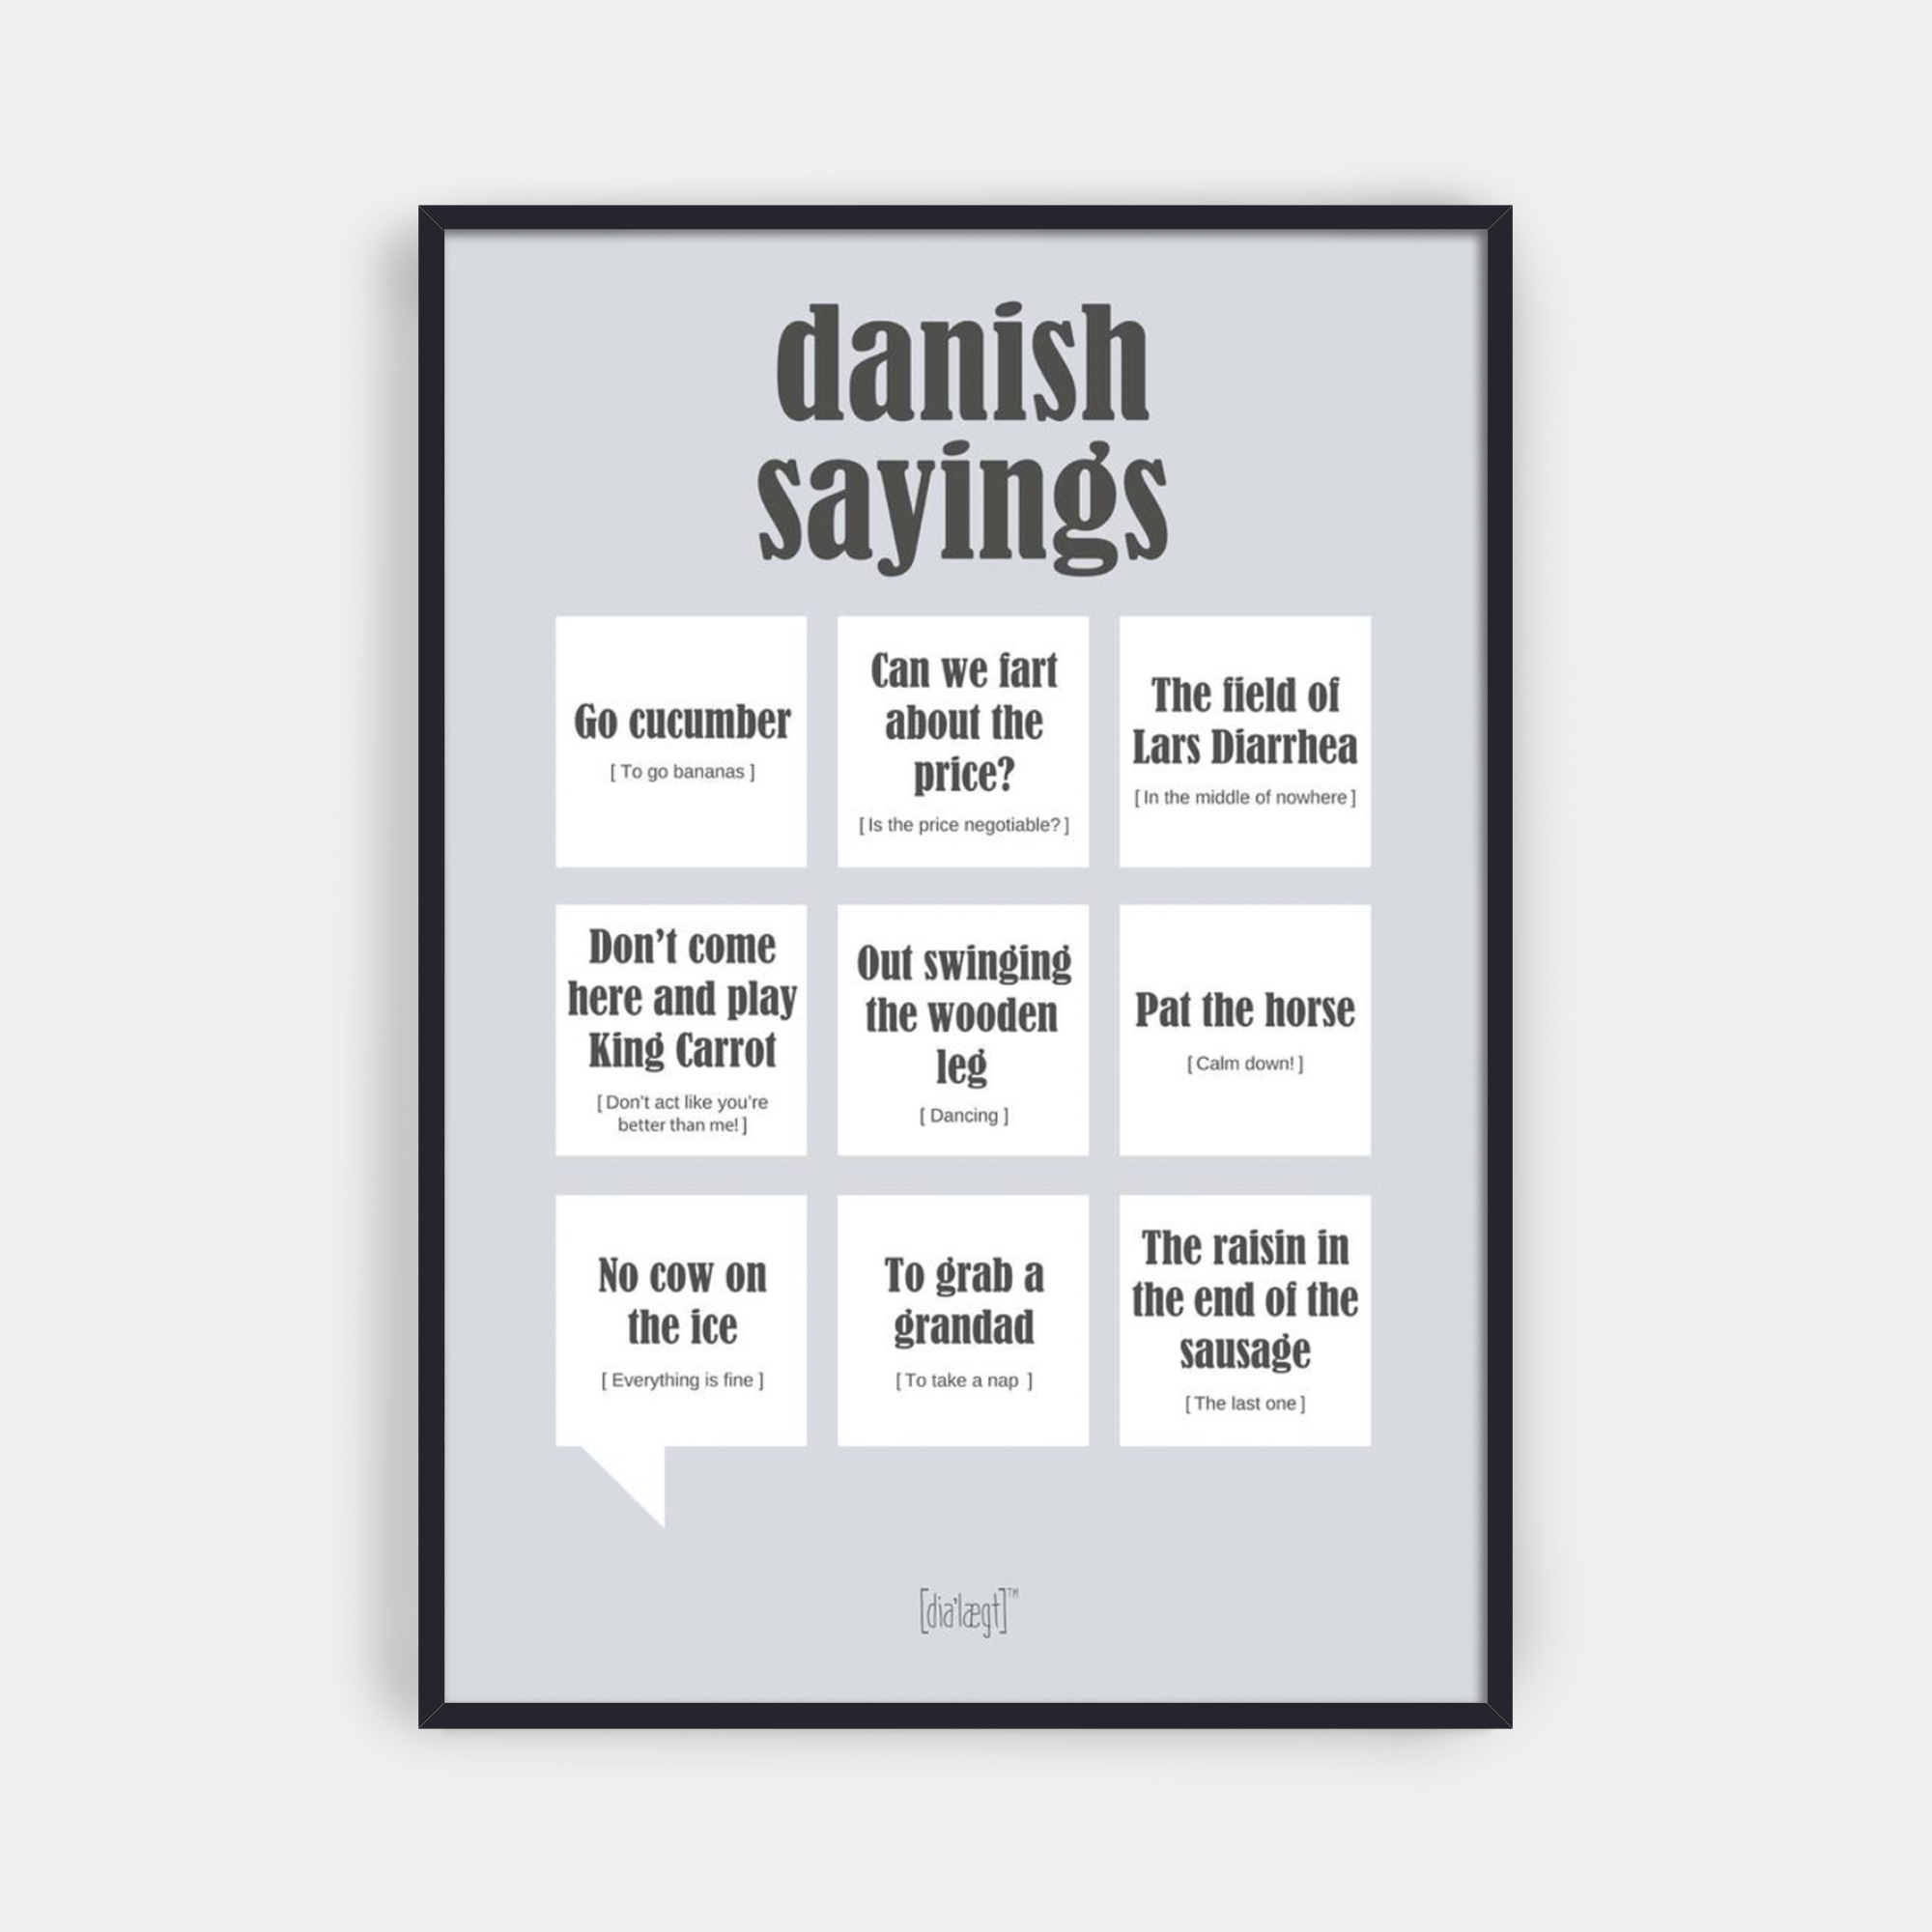 Danish Sayings